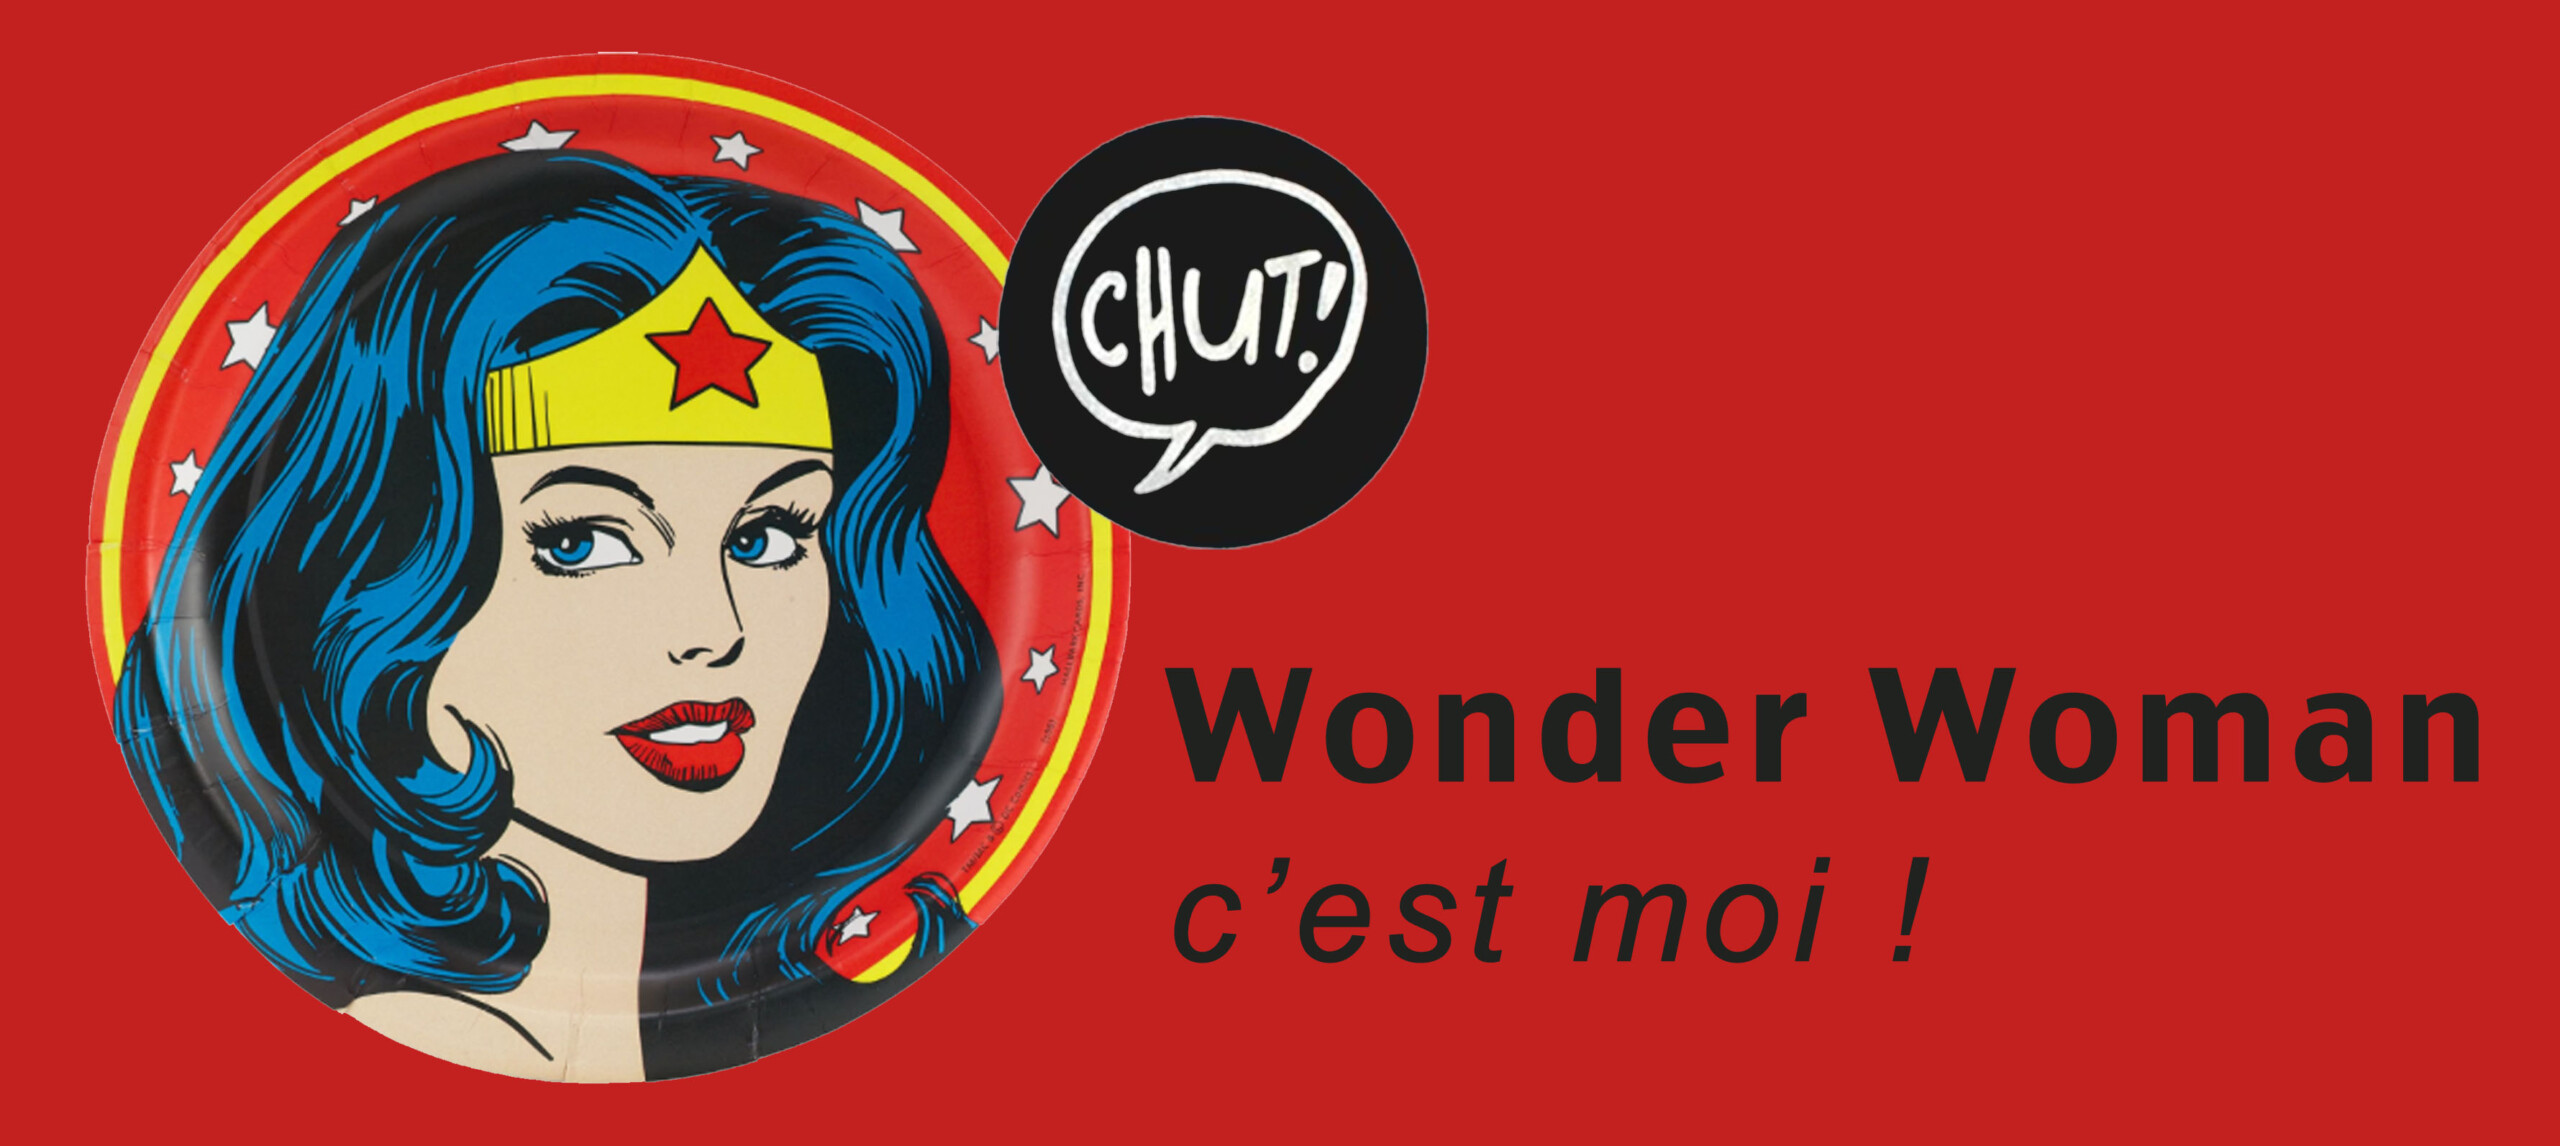 Wonder woman et architecte d'intérieur ! - Agence Oz by Cath, architecture d'intérieur